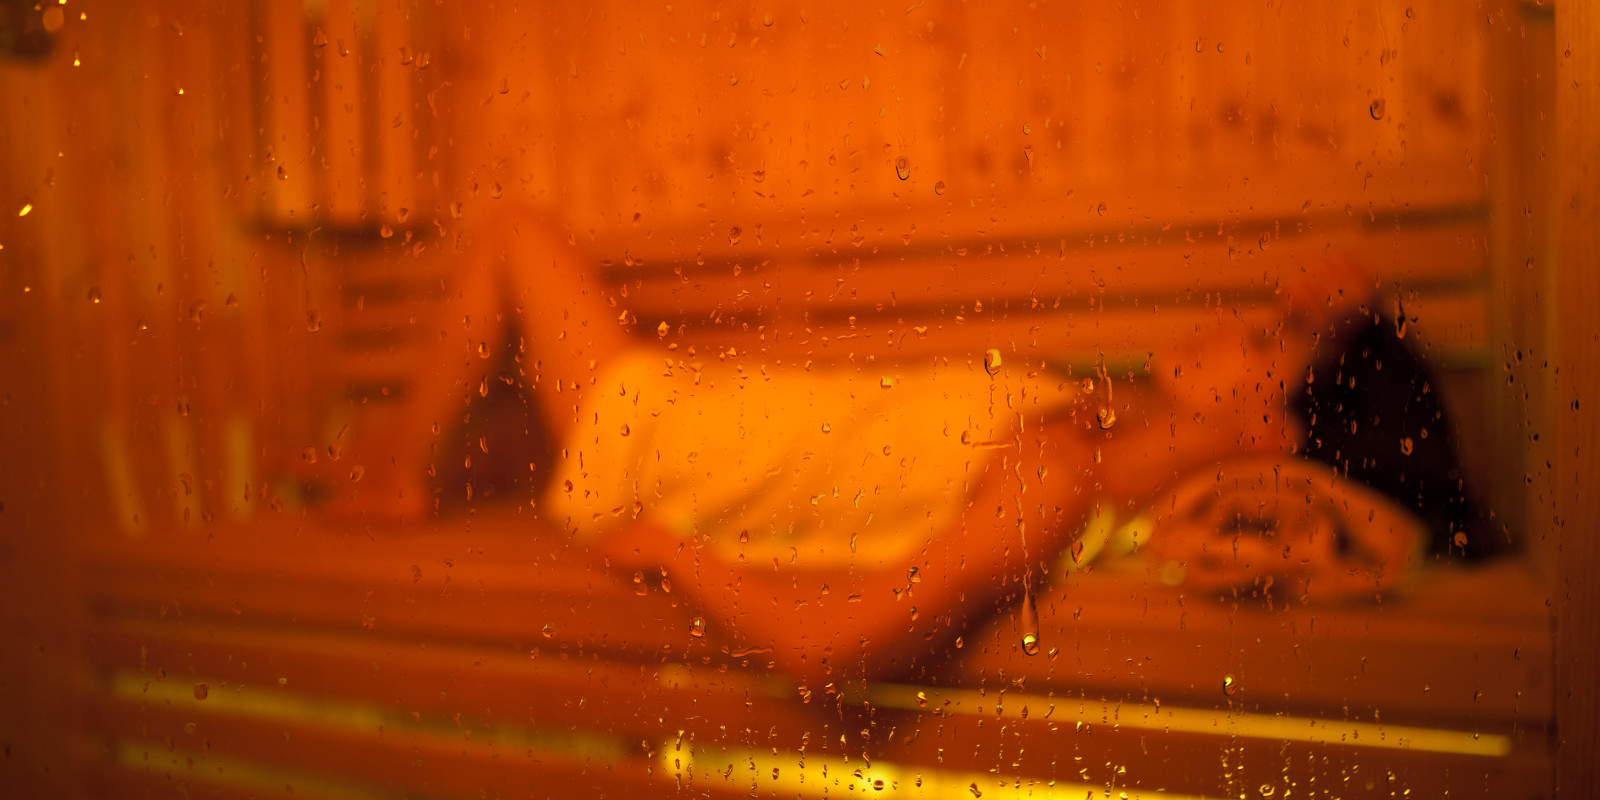 Frau nimmt ein Dampfbad, um gegen ihre Long Covid Symptome anzukämpfen